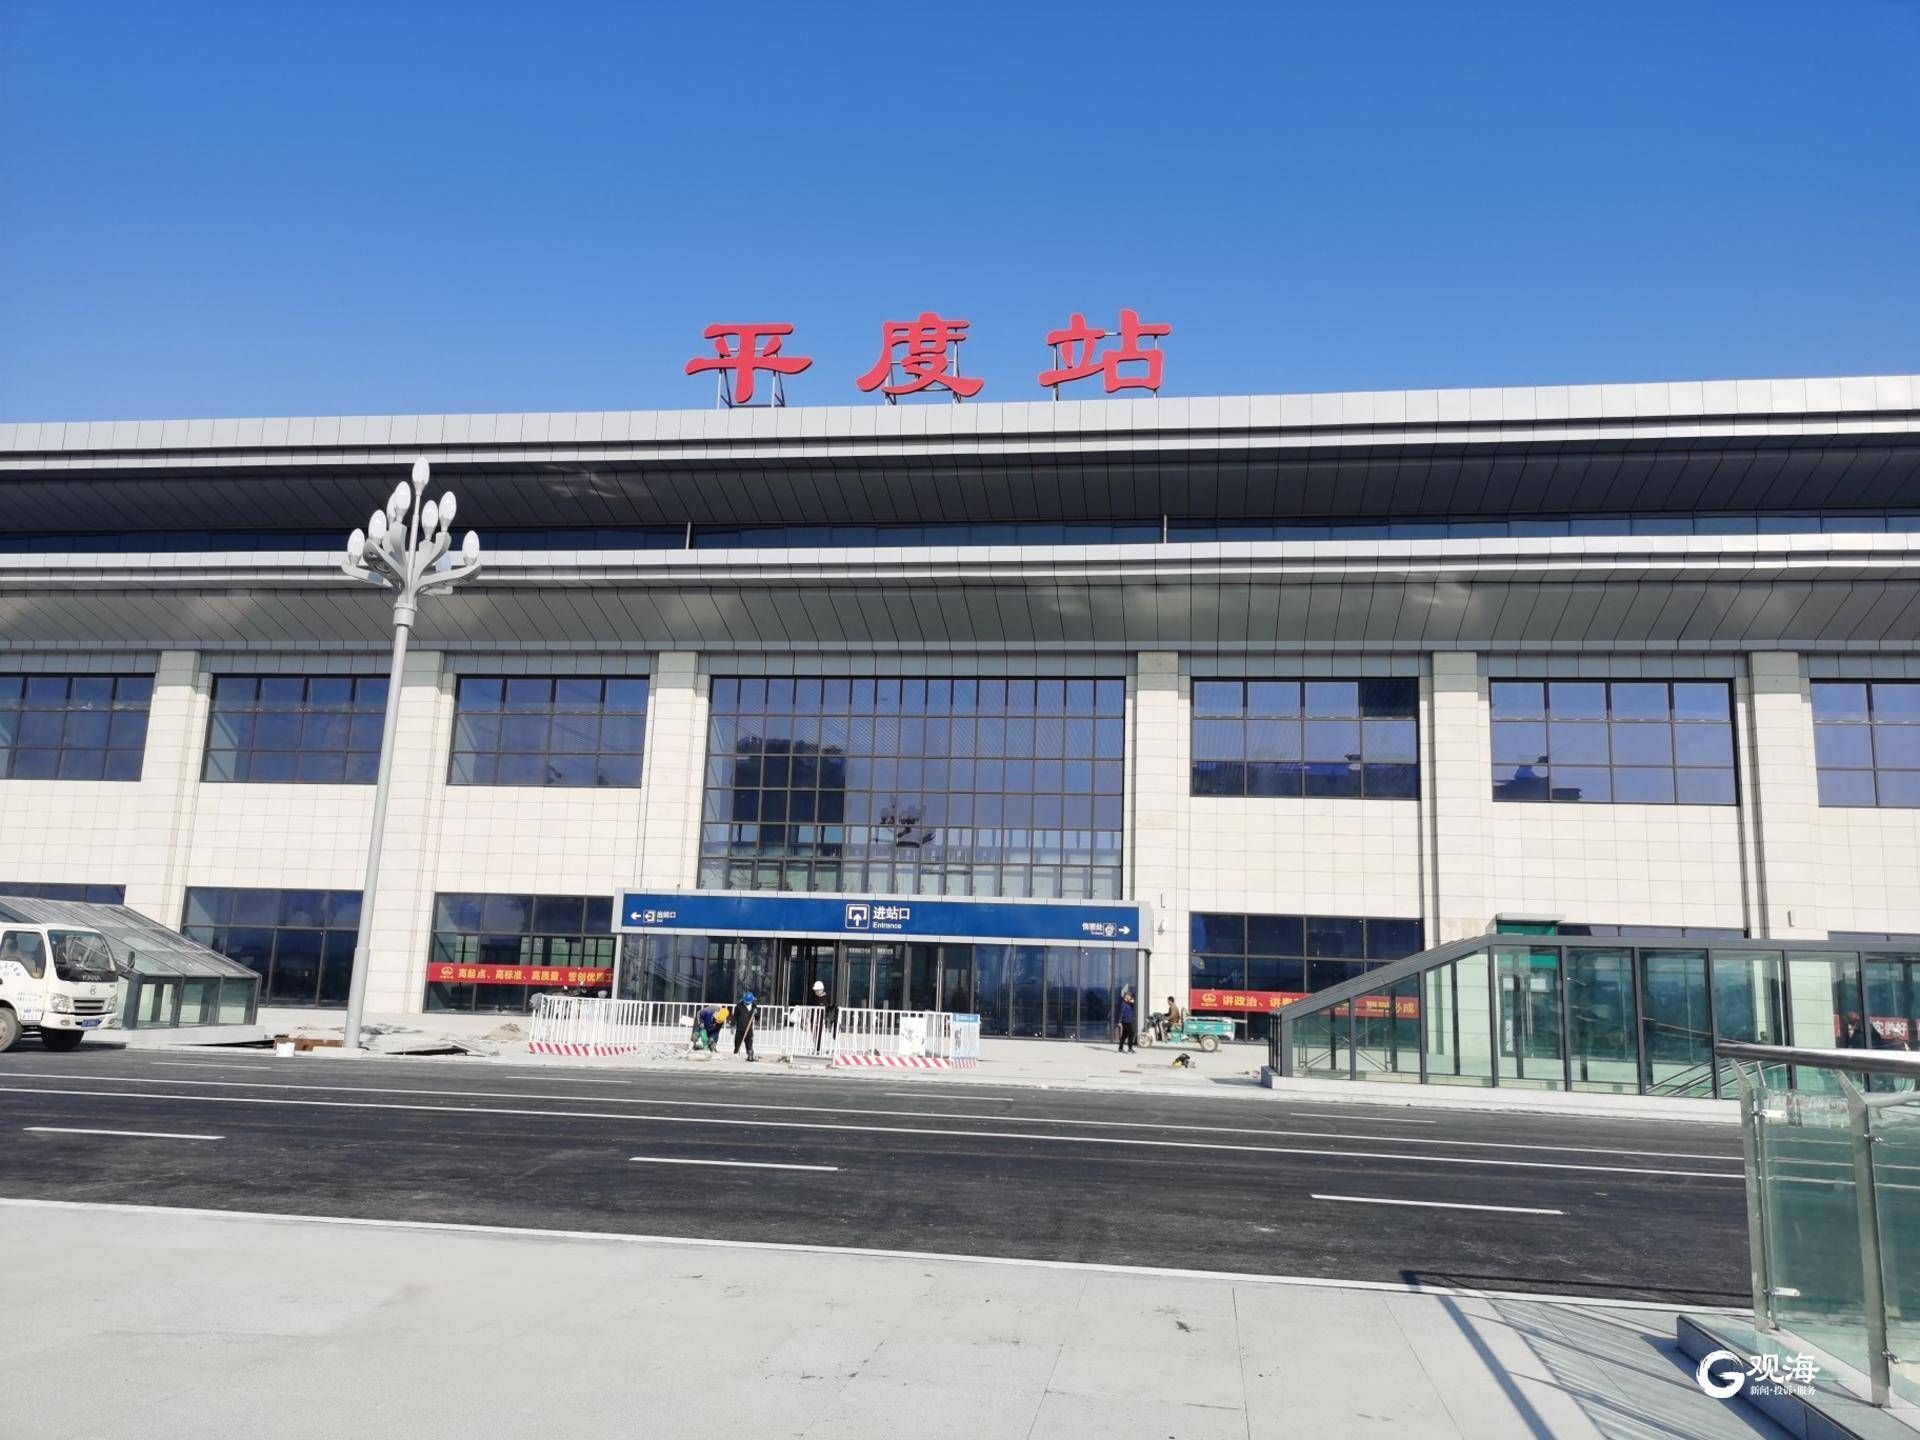 2020年8月21日,潍莱高铁联调联试全面启动;2020年5月4日,潍莱高铁平度